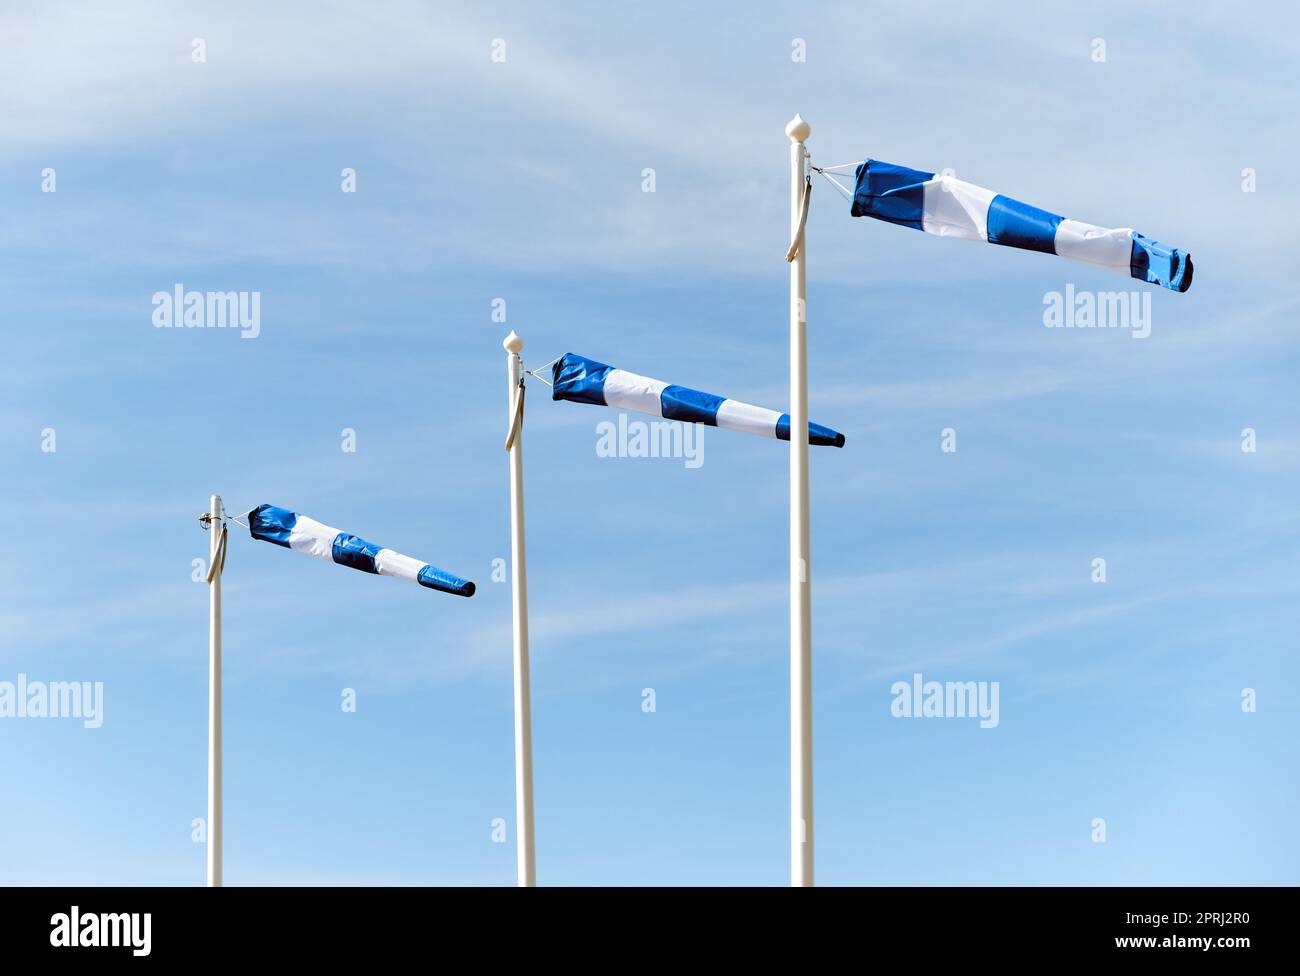 Trois chaussettes à vent indiquant la direction et la vitesse du vent à l'aéroport Banque D'Images